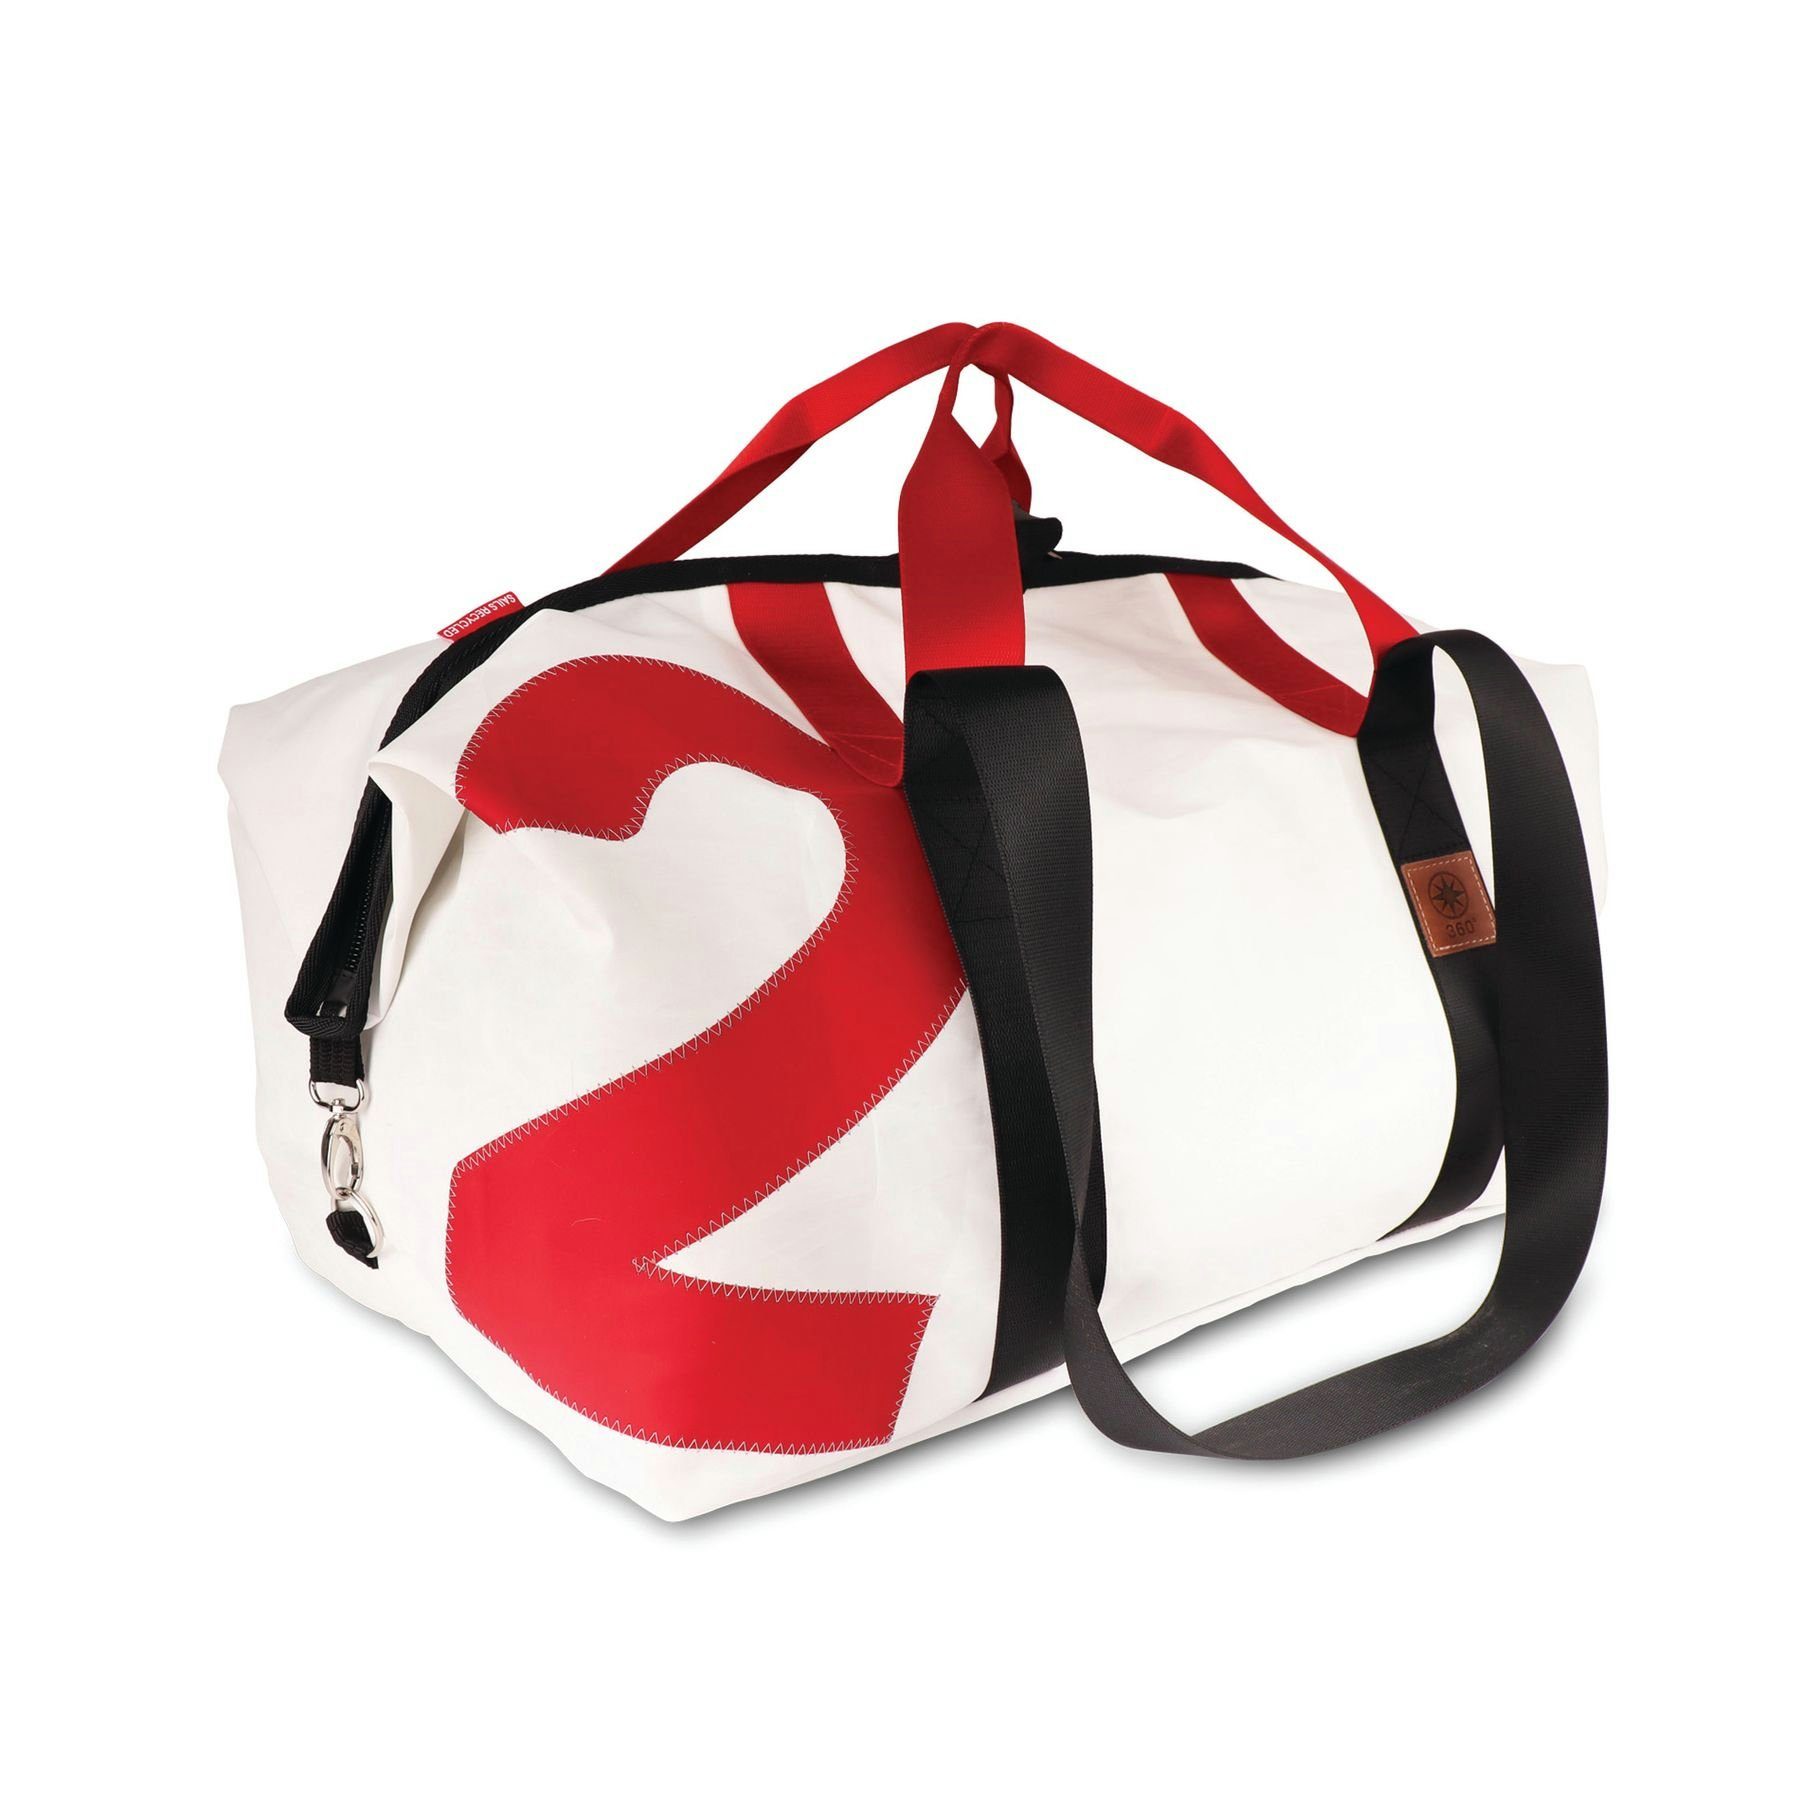 360Grad Reisetasche Kutter XL Reisetasche weiß mit Zahl rot, Gurt rot/schwarz Weiß/Rot